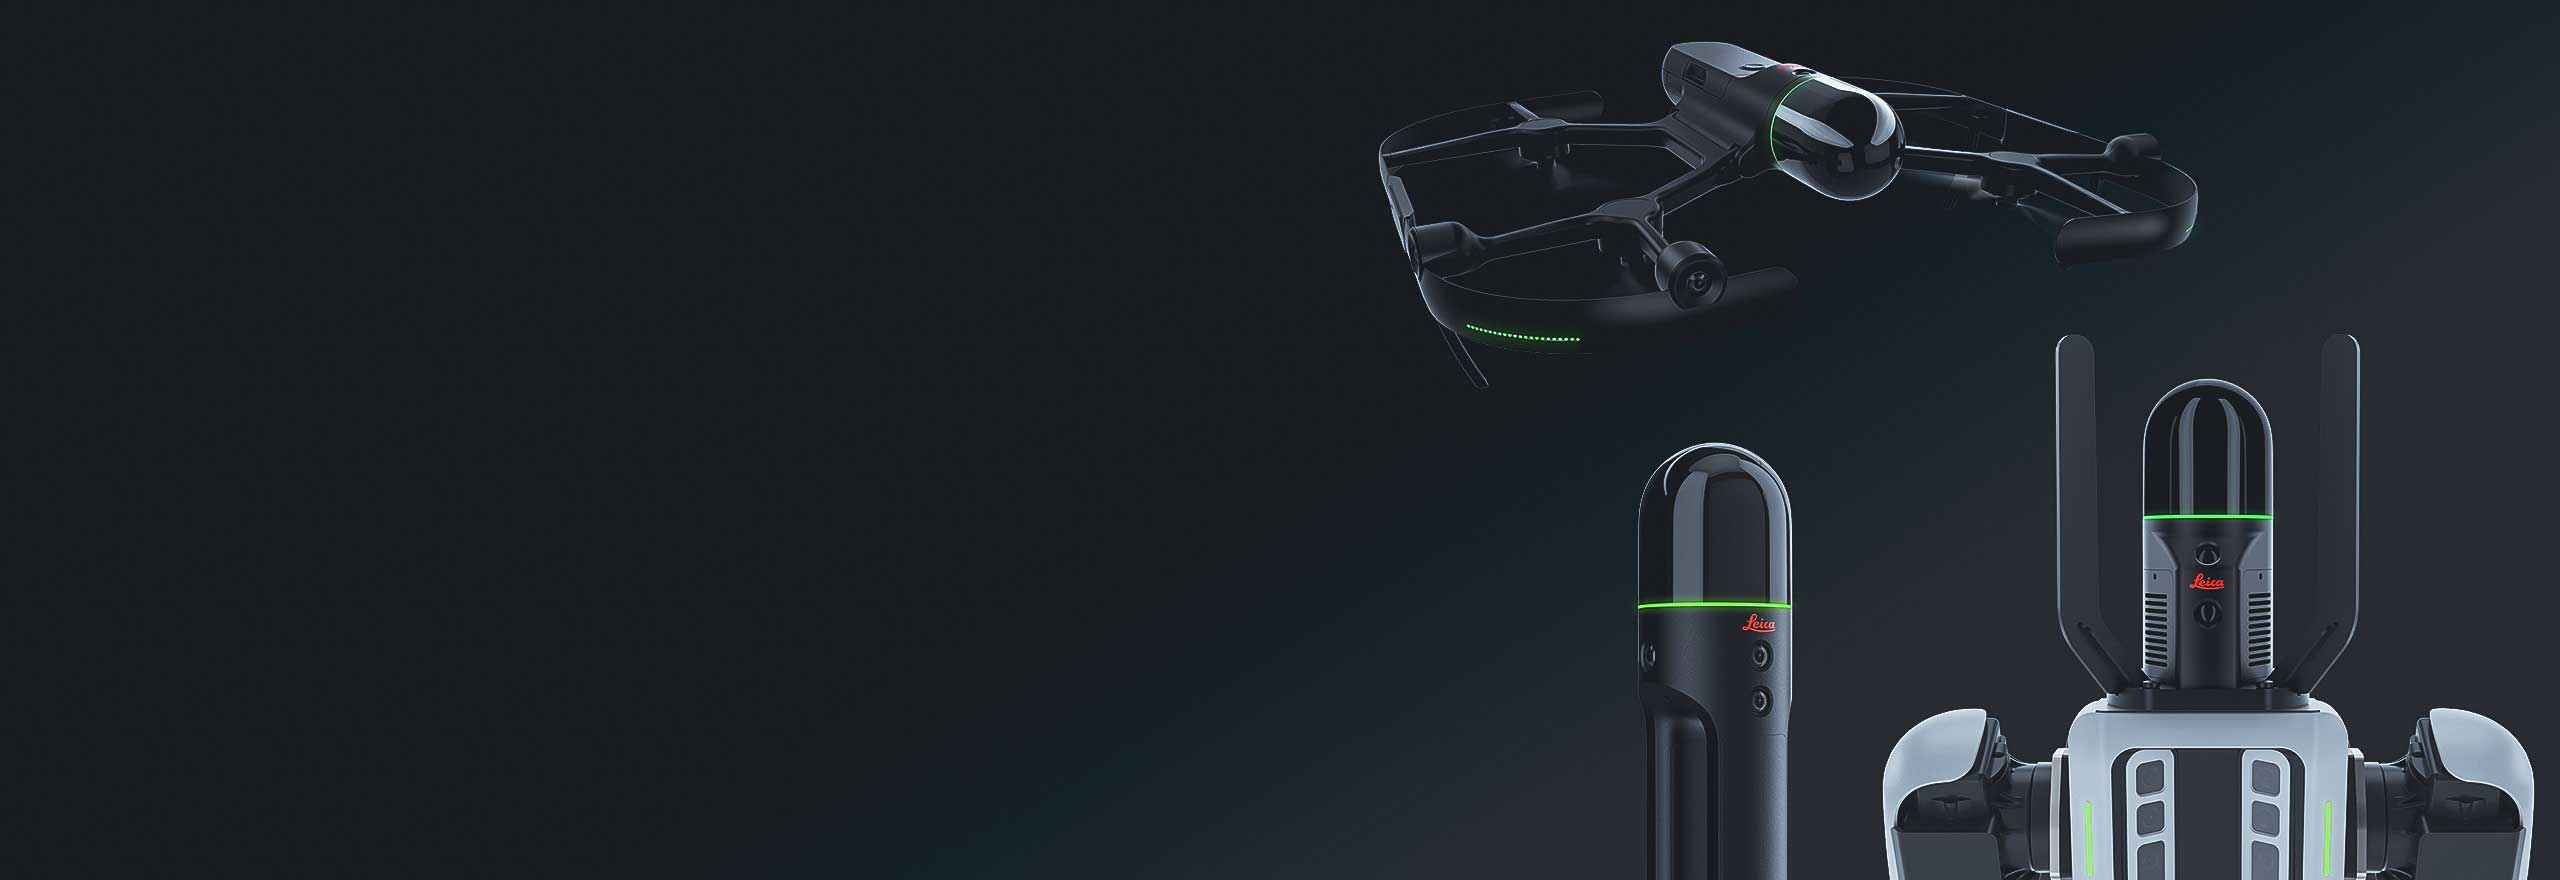 Soluciones de captura de realidad autónoma Leica BLK desde escáneres láser voladores hasta portadores robóticos